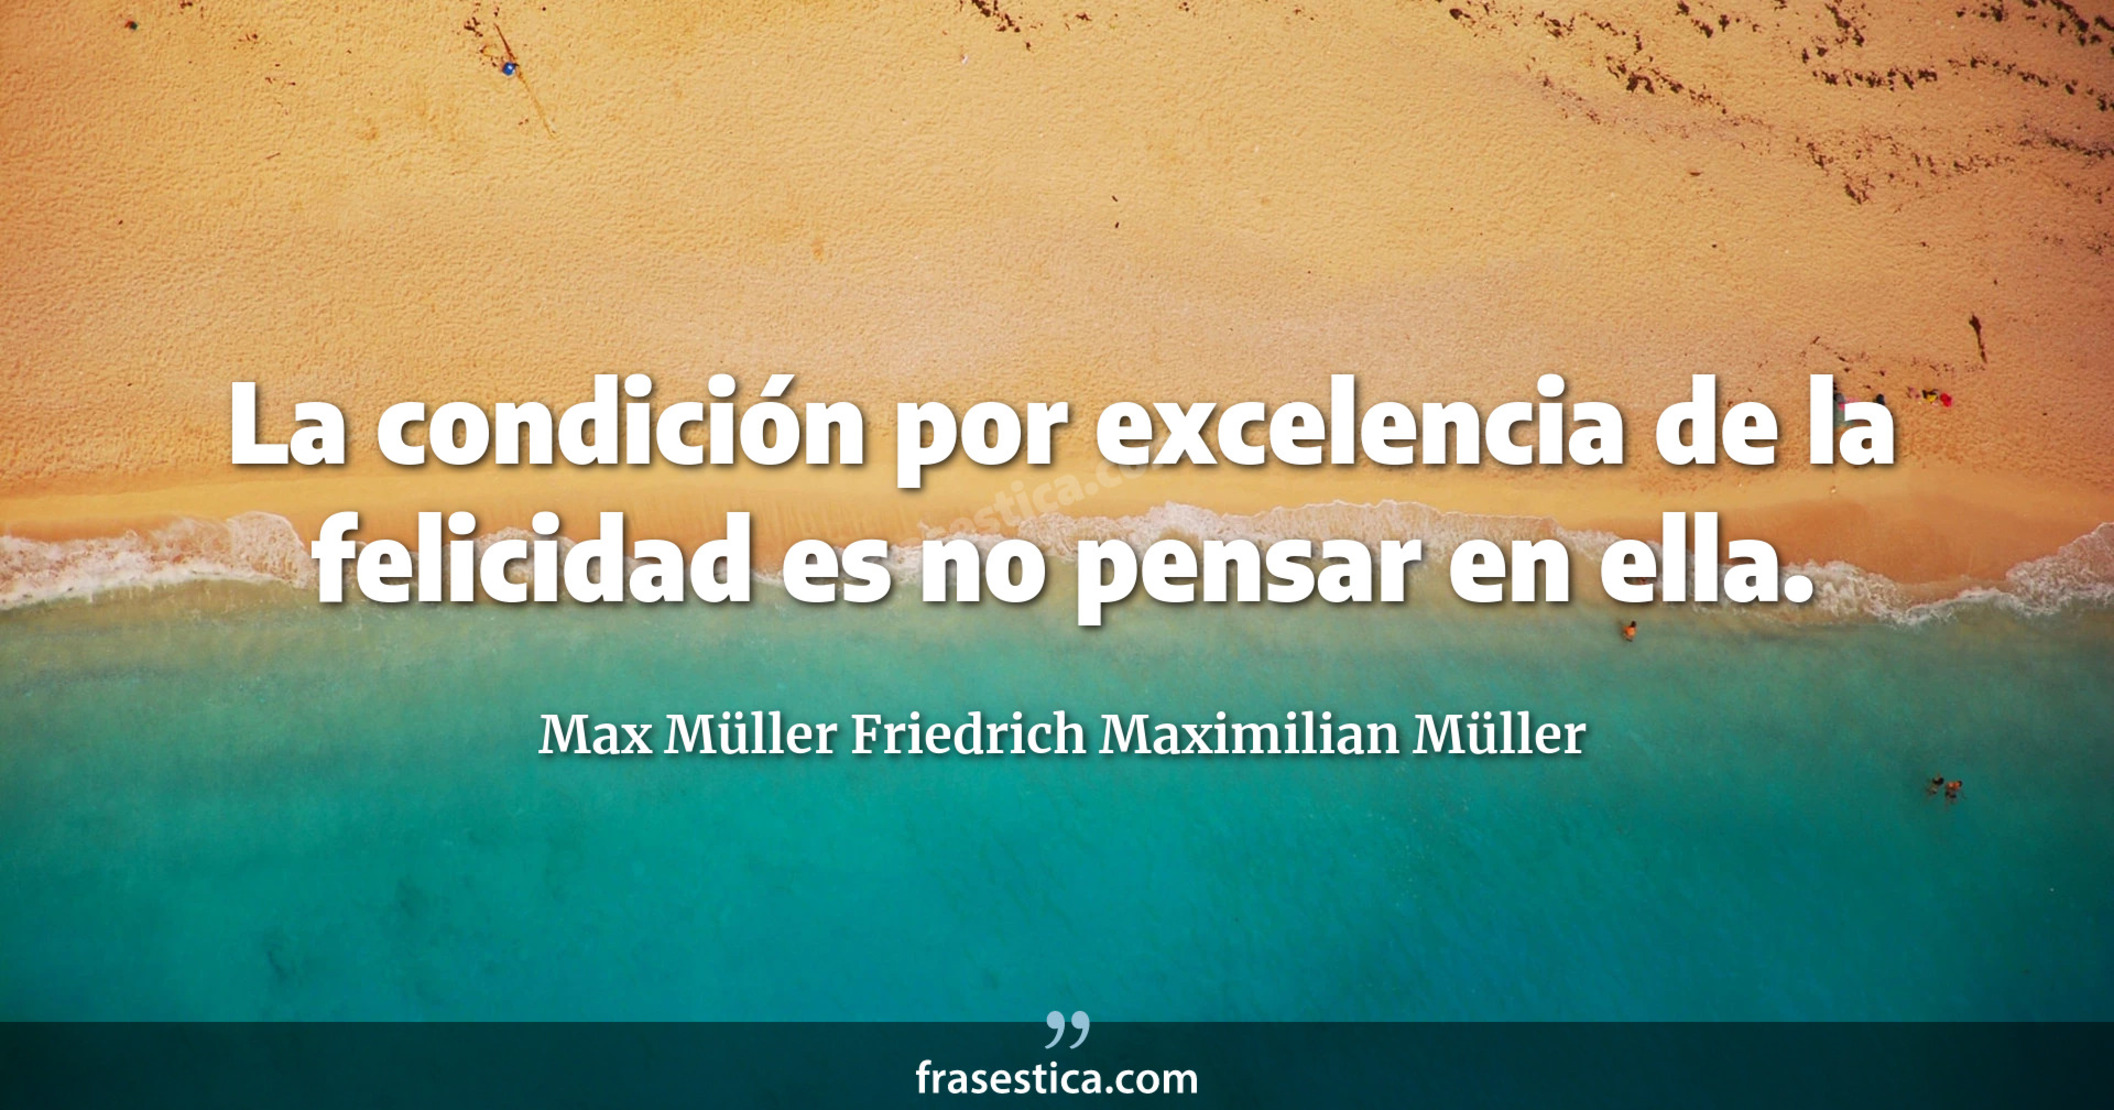 La condición por excelencia de la felicidad es no pensar en ella. - Max Müller Friedrich Maximilian Müller